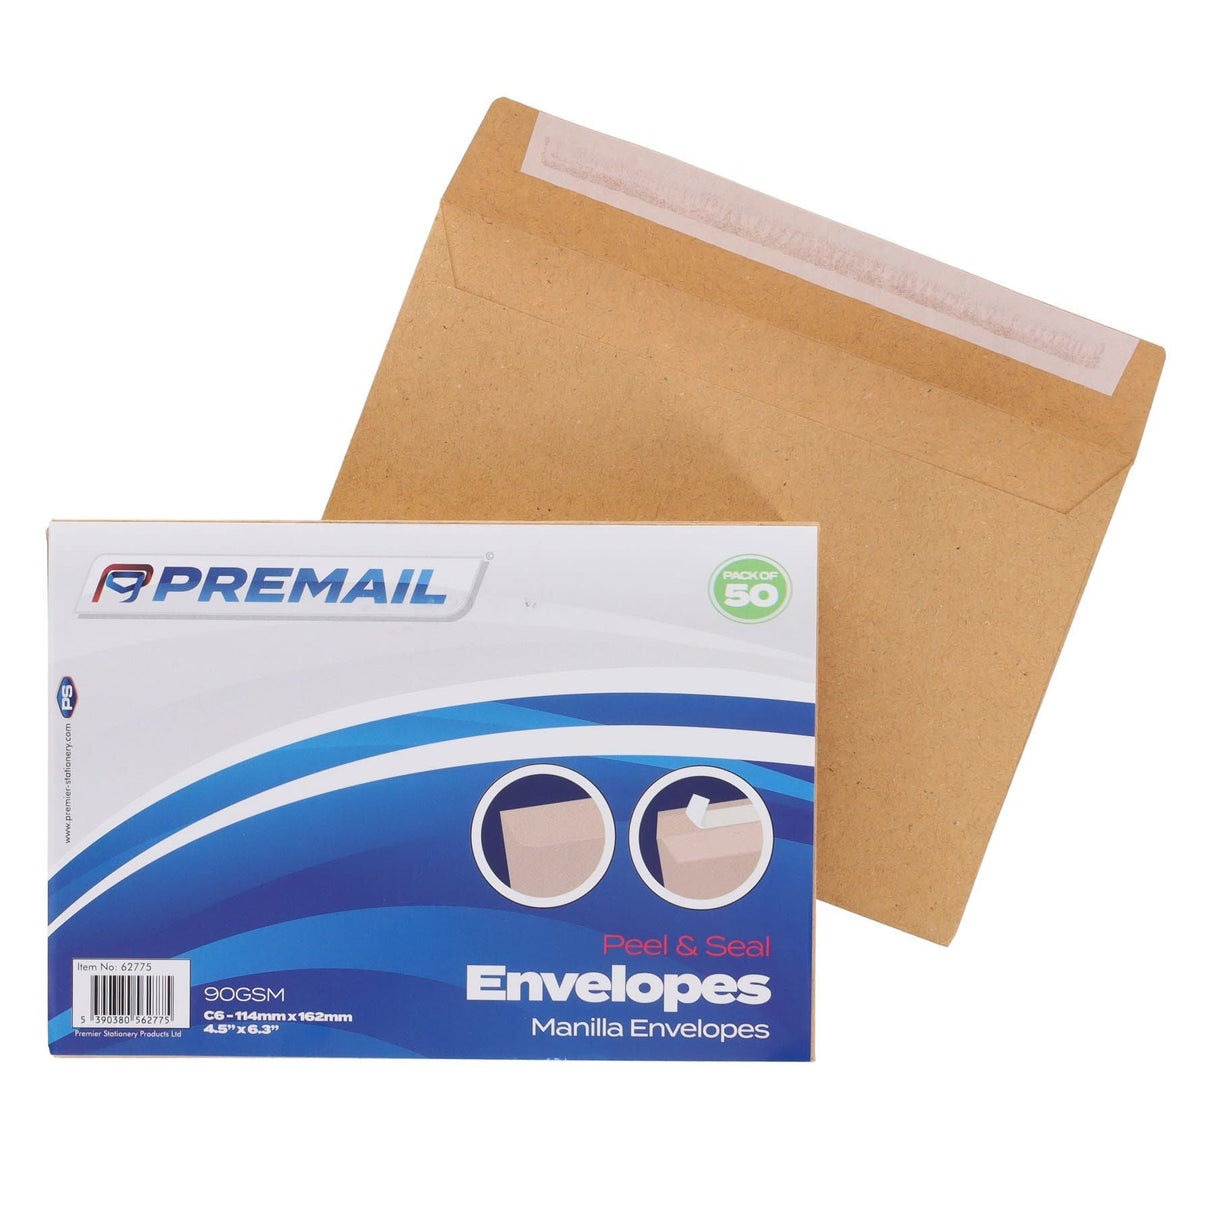 Premail C6 Peel & Seal Envelopes - 116 x 167mm - Manilla - Pack of 50-Envelopes-Premail|StationeryShop.co.uk